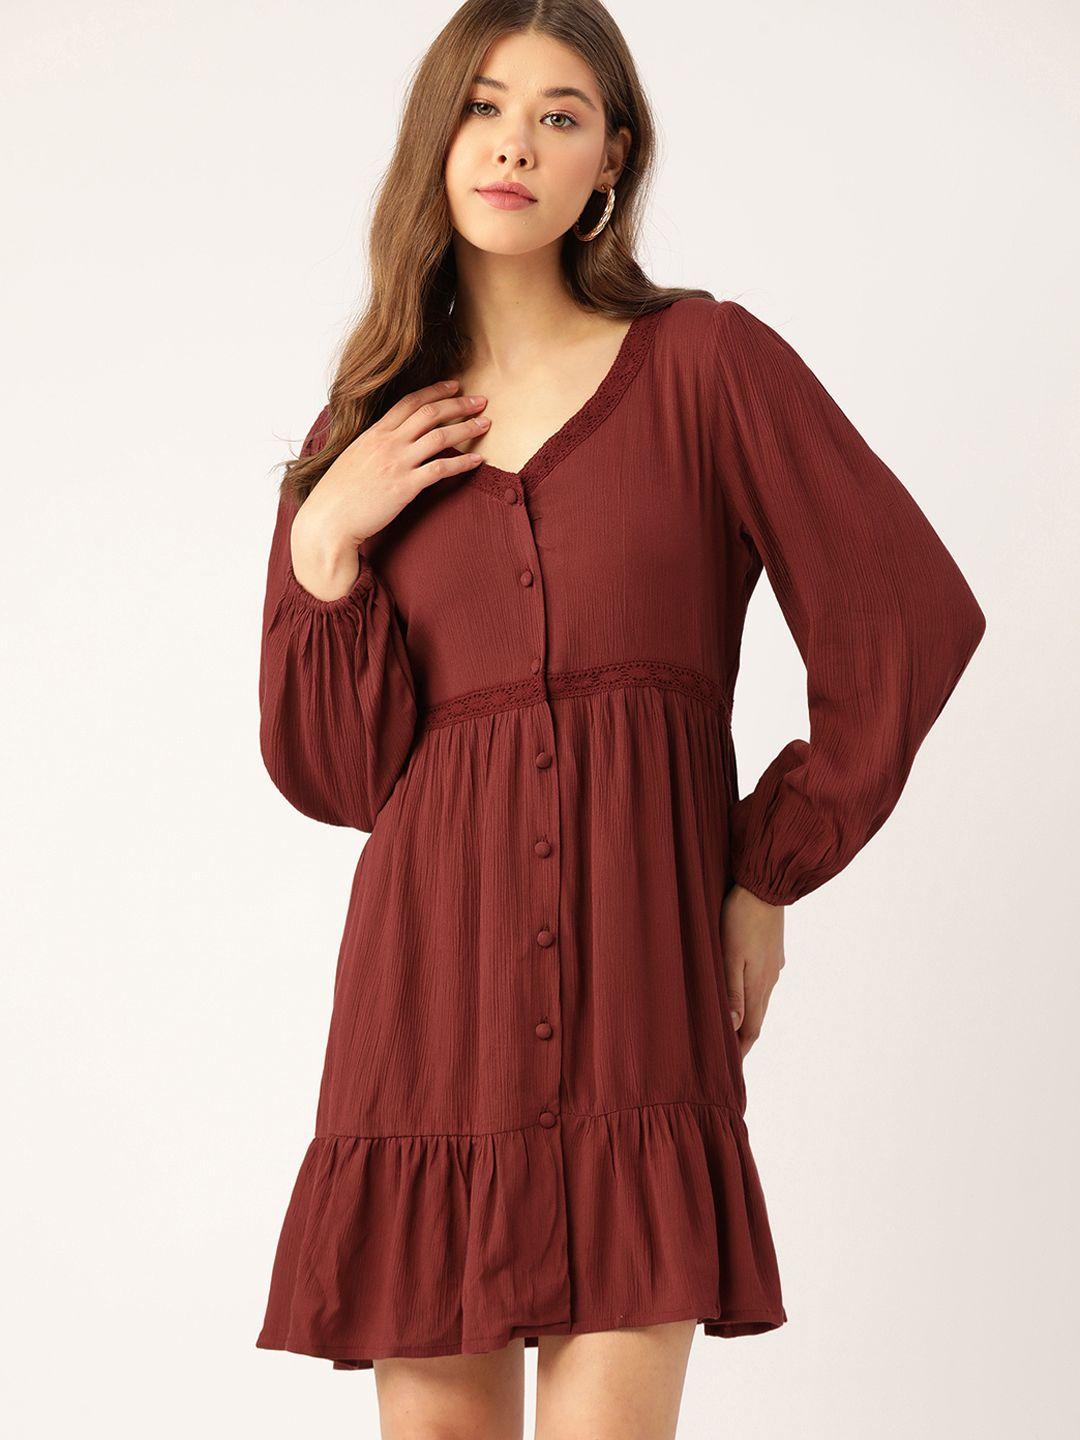 dressberry women rust red textured knit a-line dress